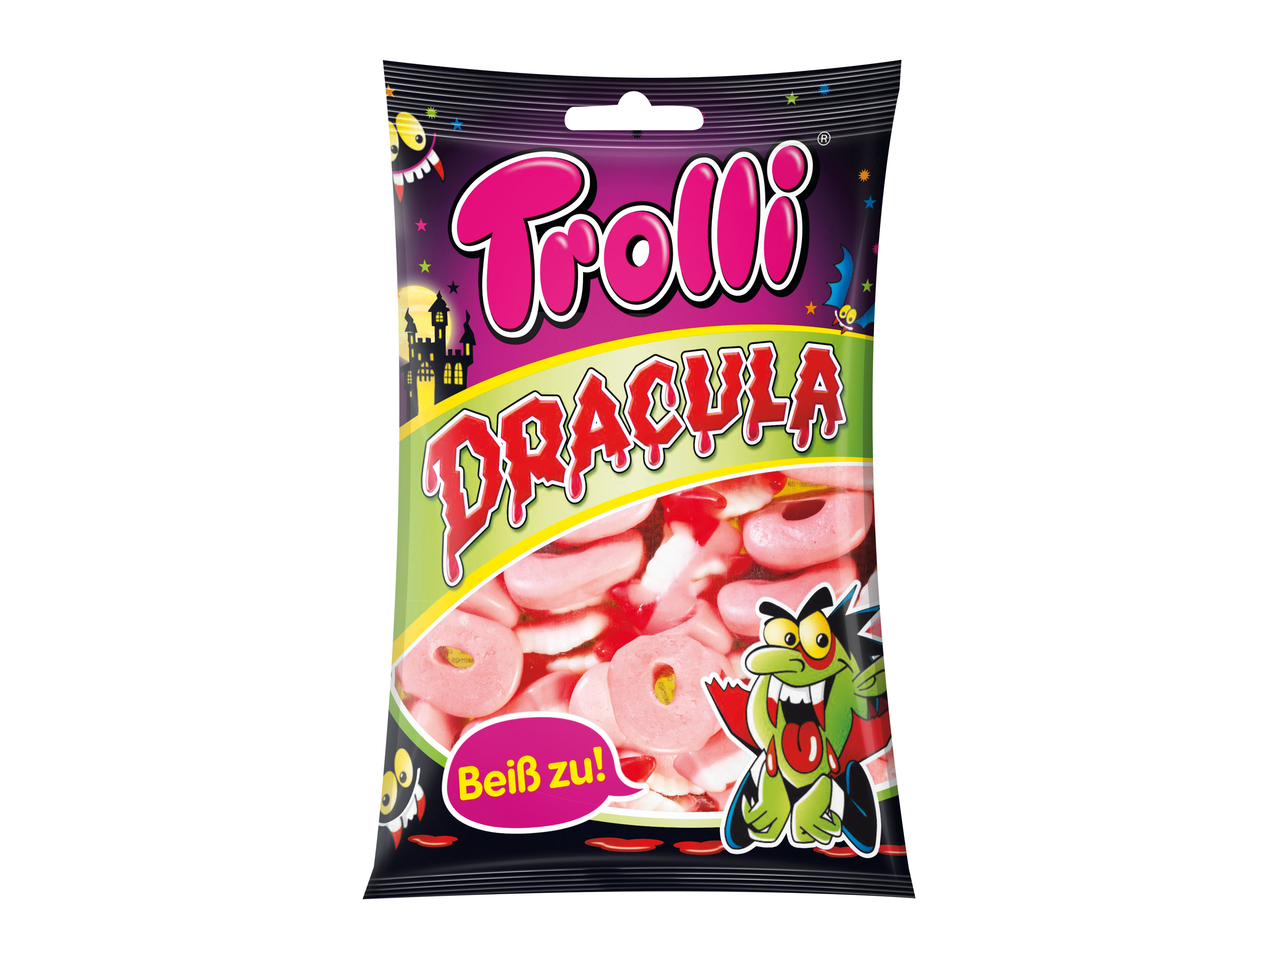 Trolli Dracula